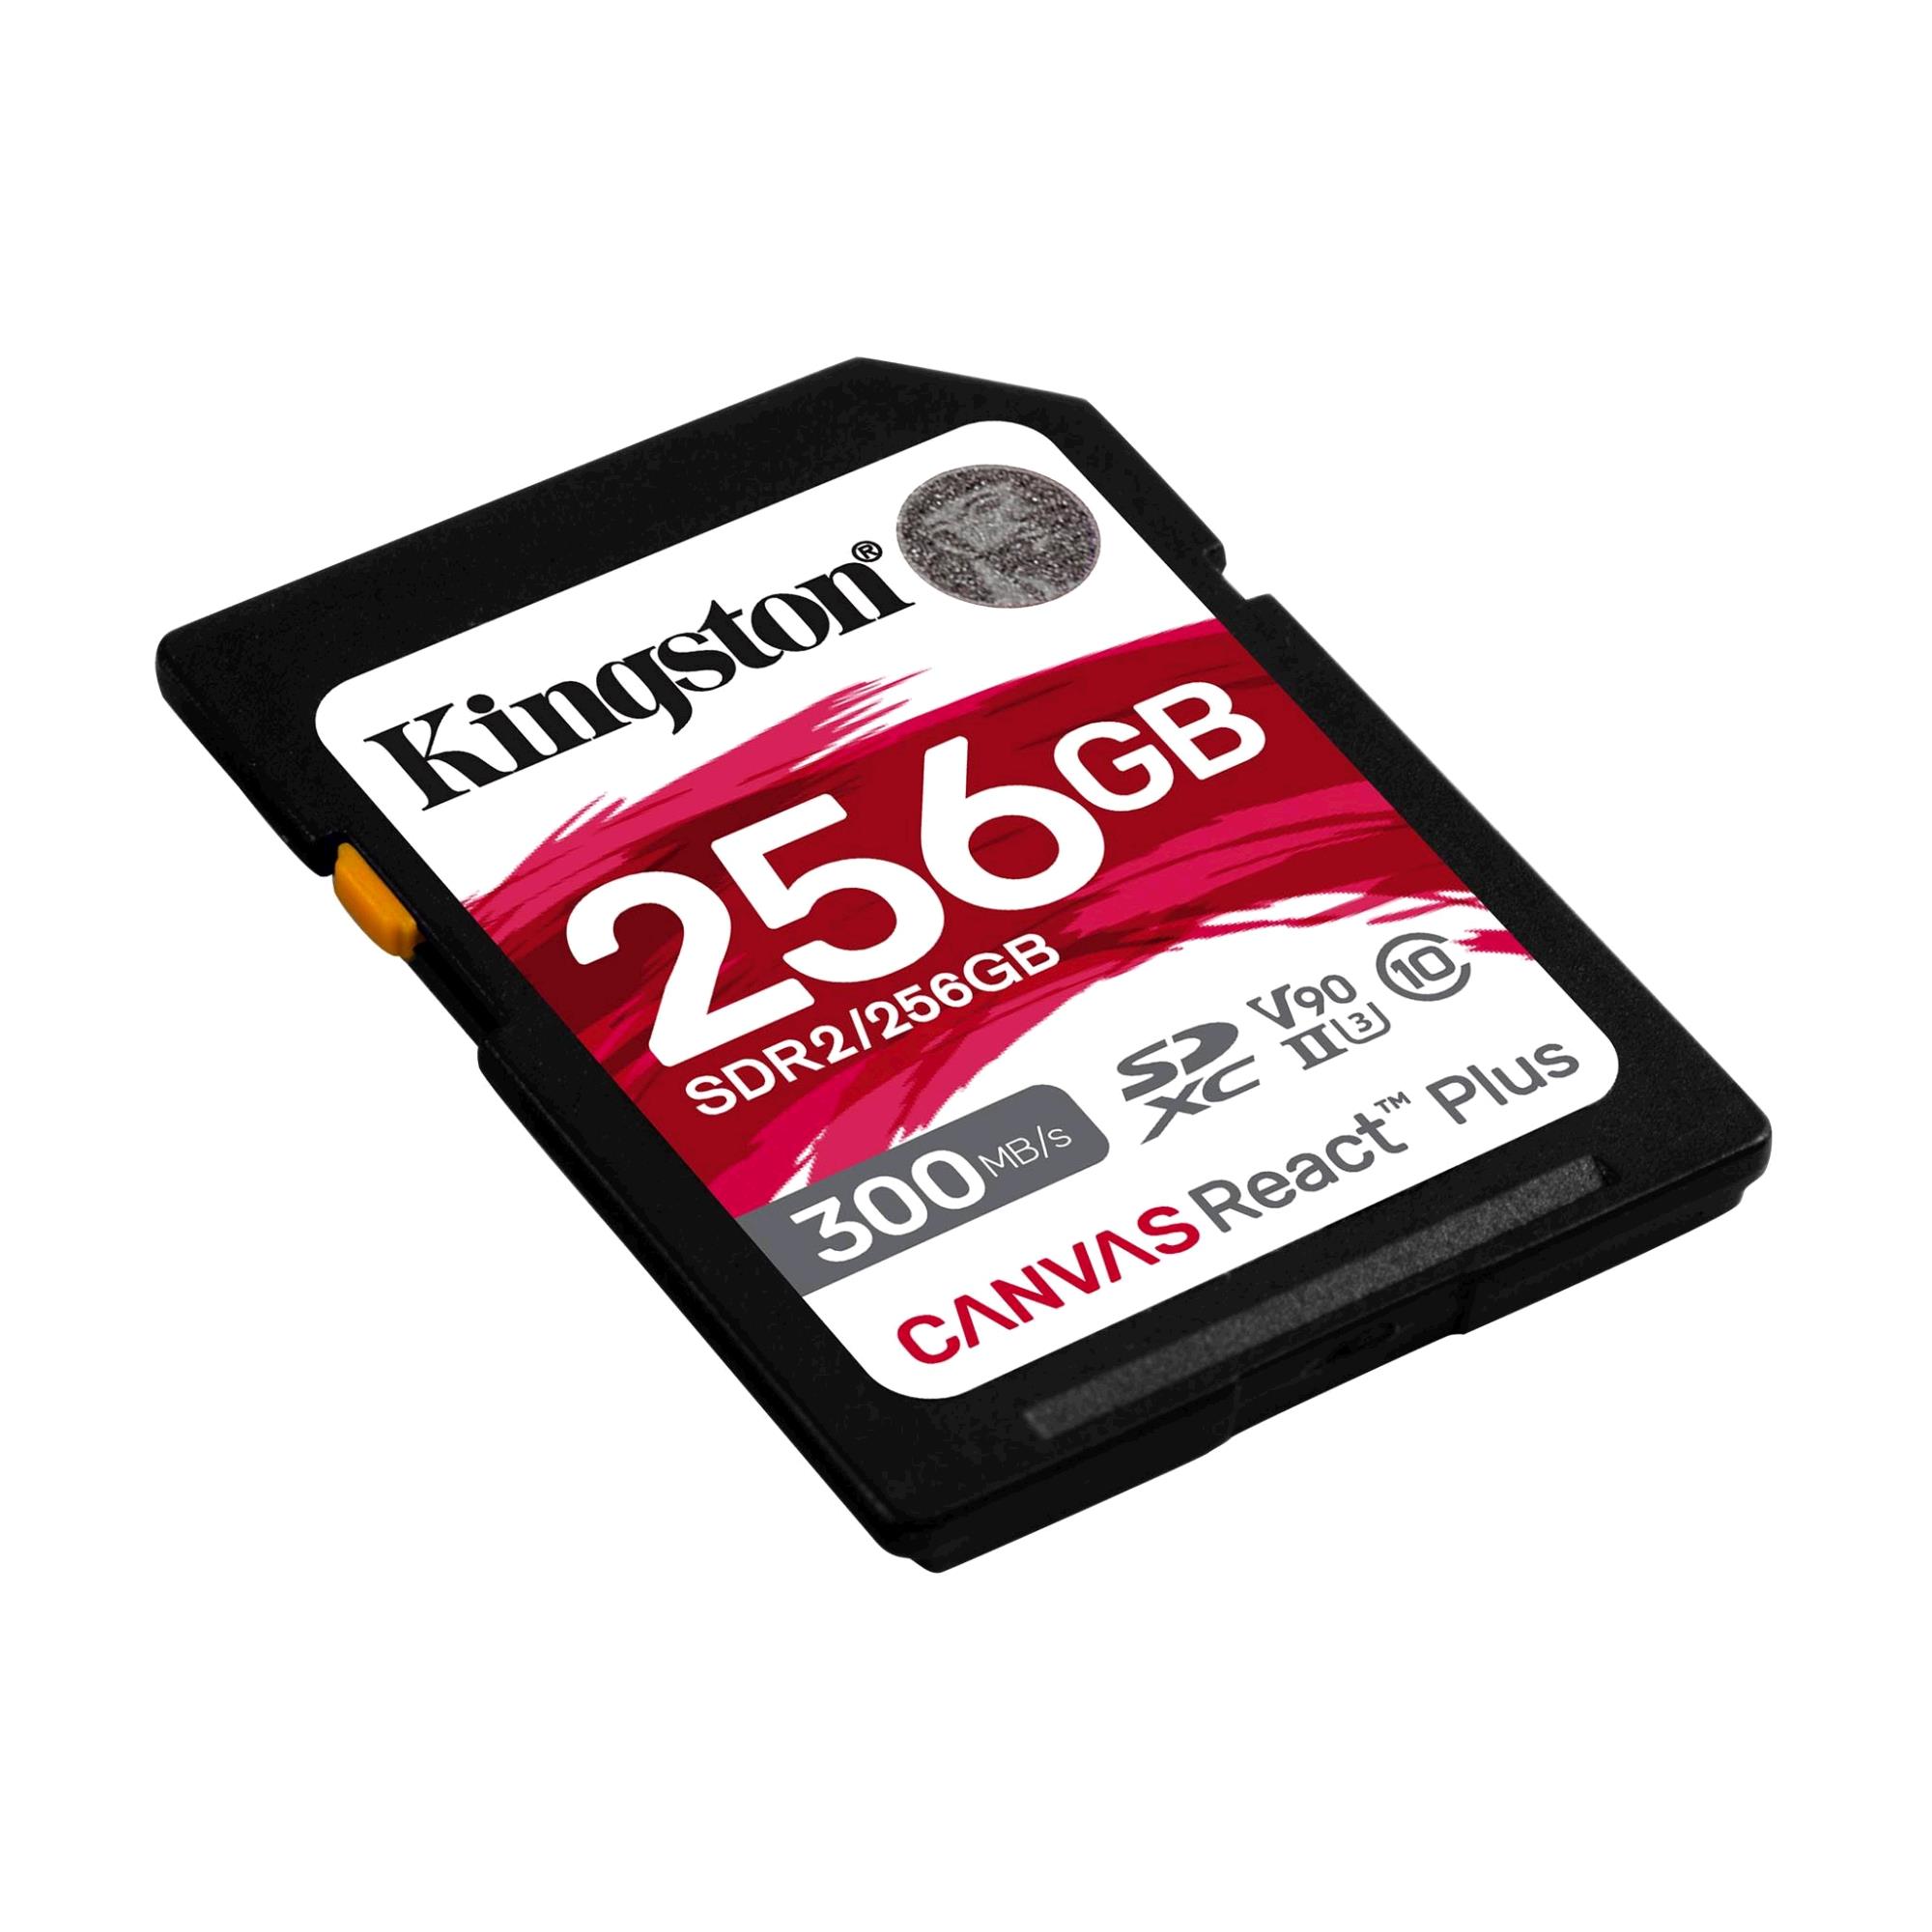 Kingston Flash Canvas REACT Plus 256GB SDXC